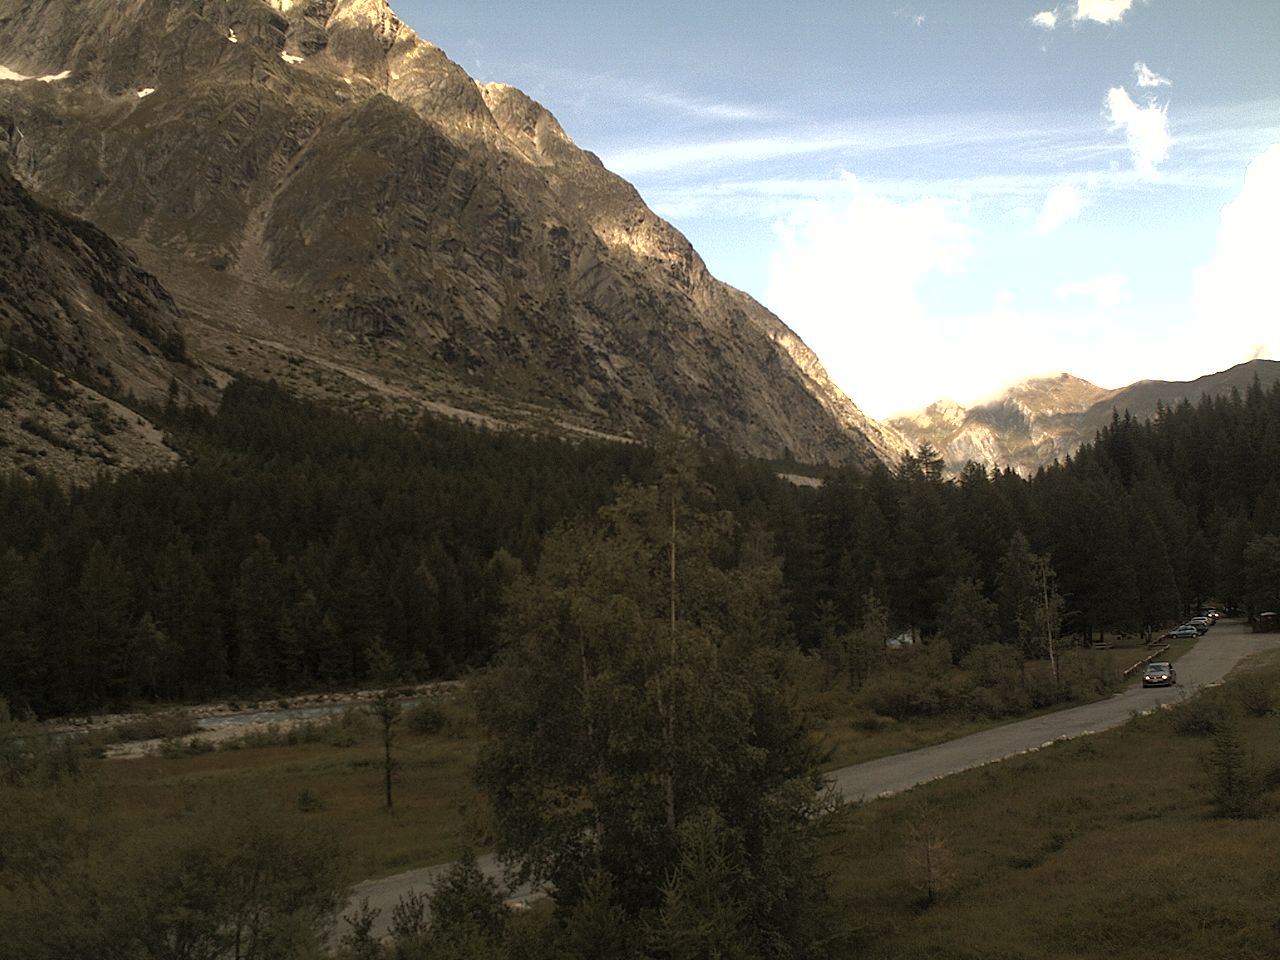 Webcam installata a Lavachey (1641 m) e puntata verso la testata della Val Ferret.